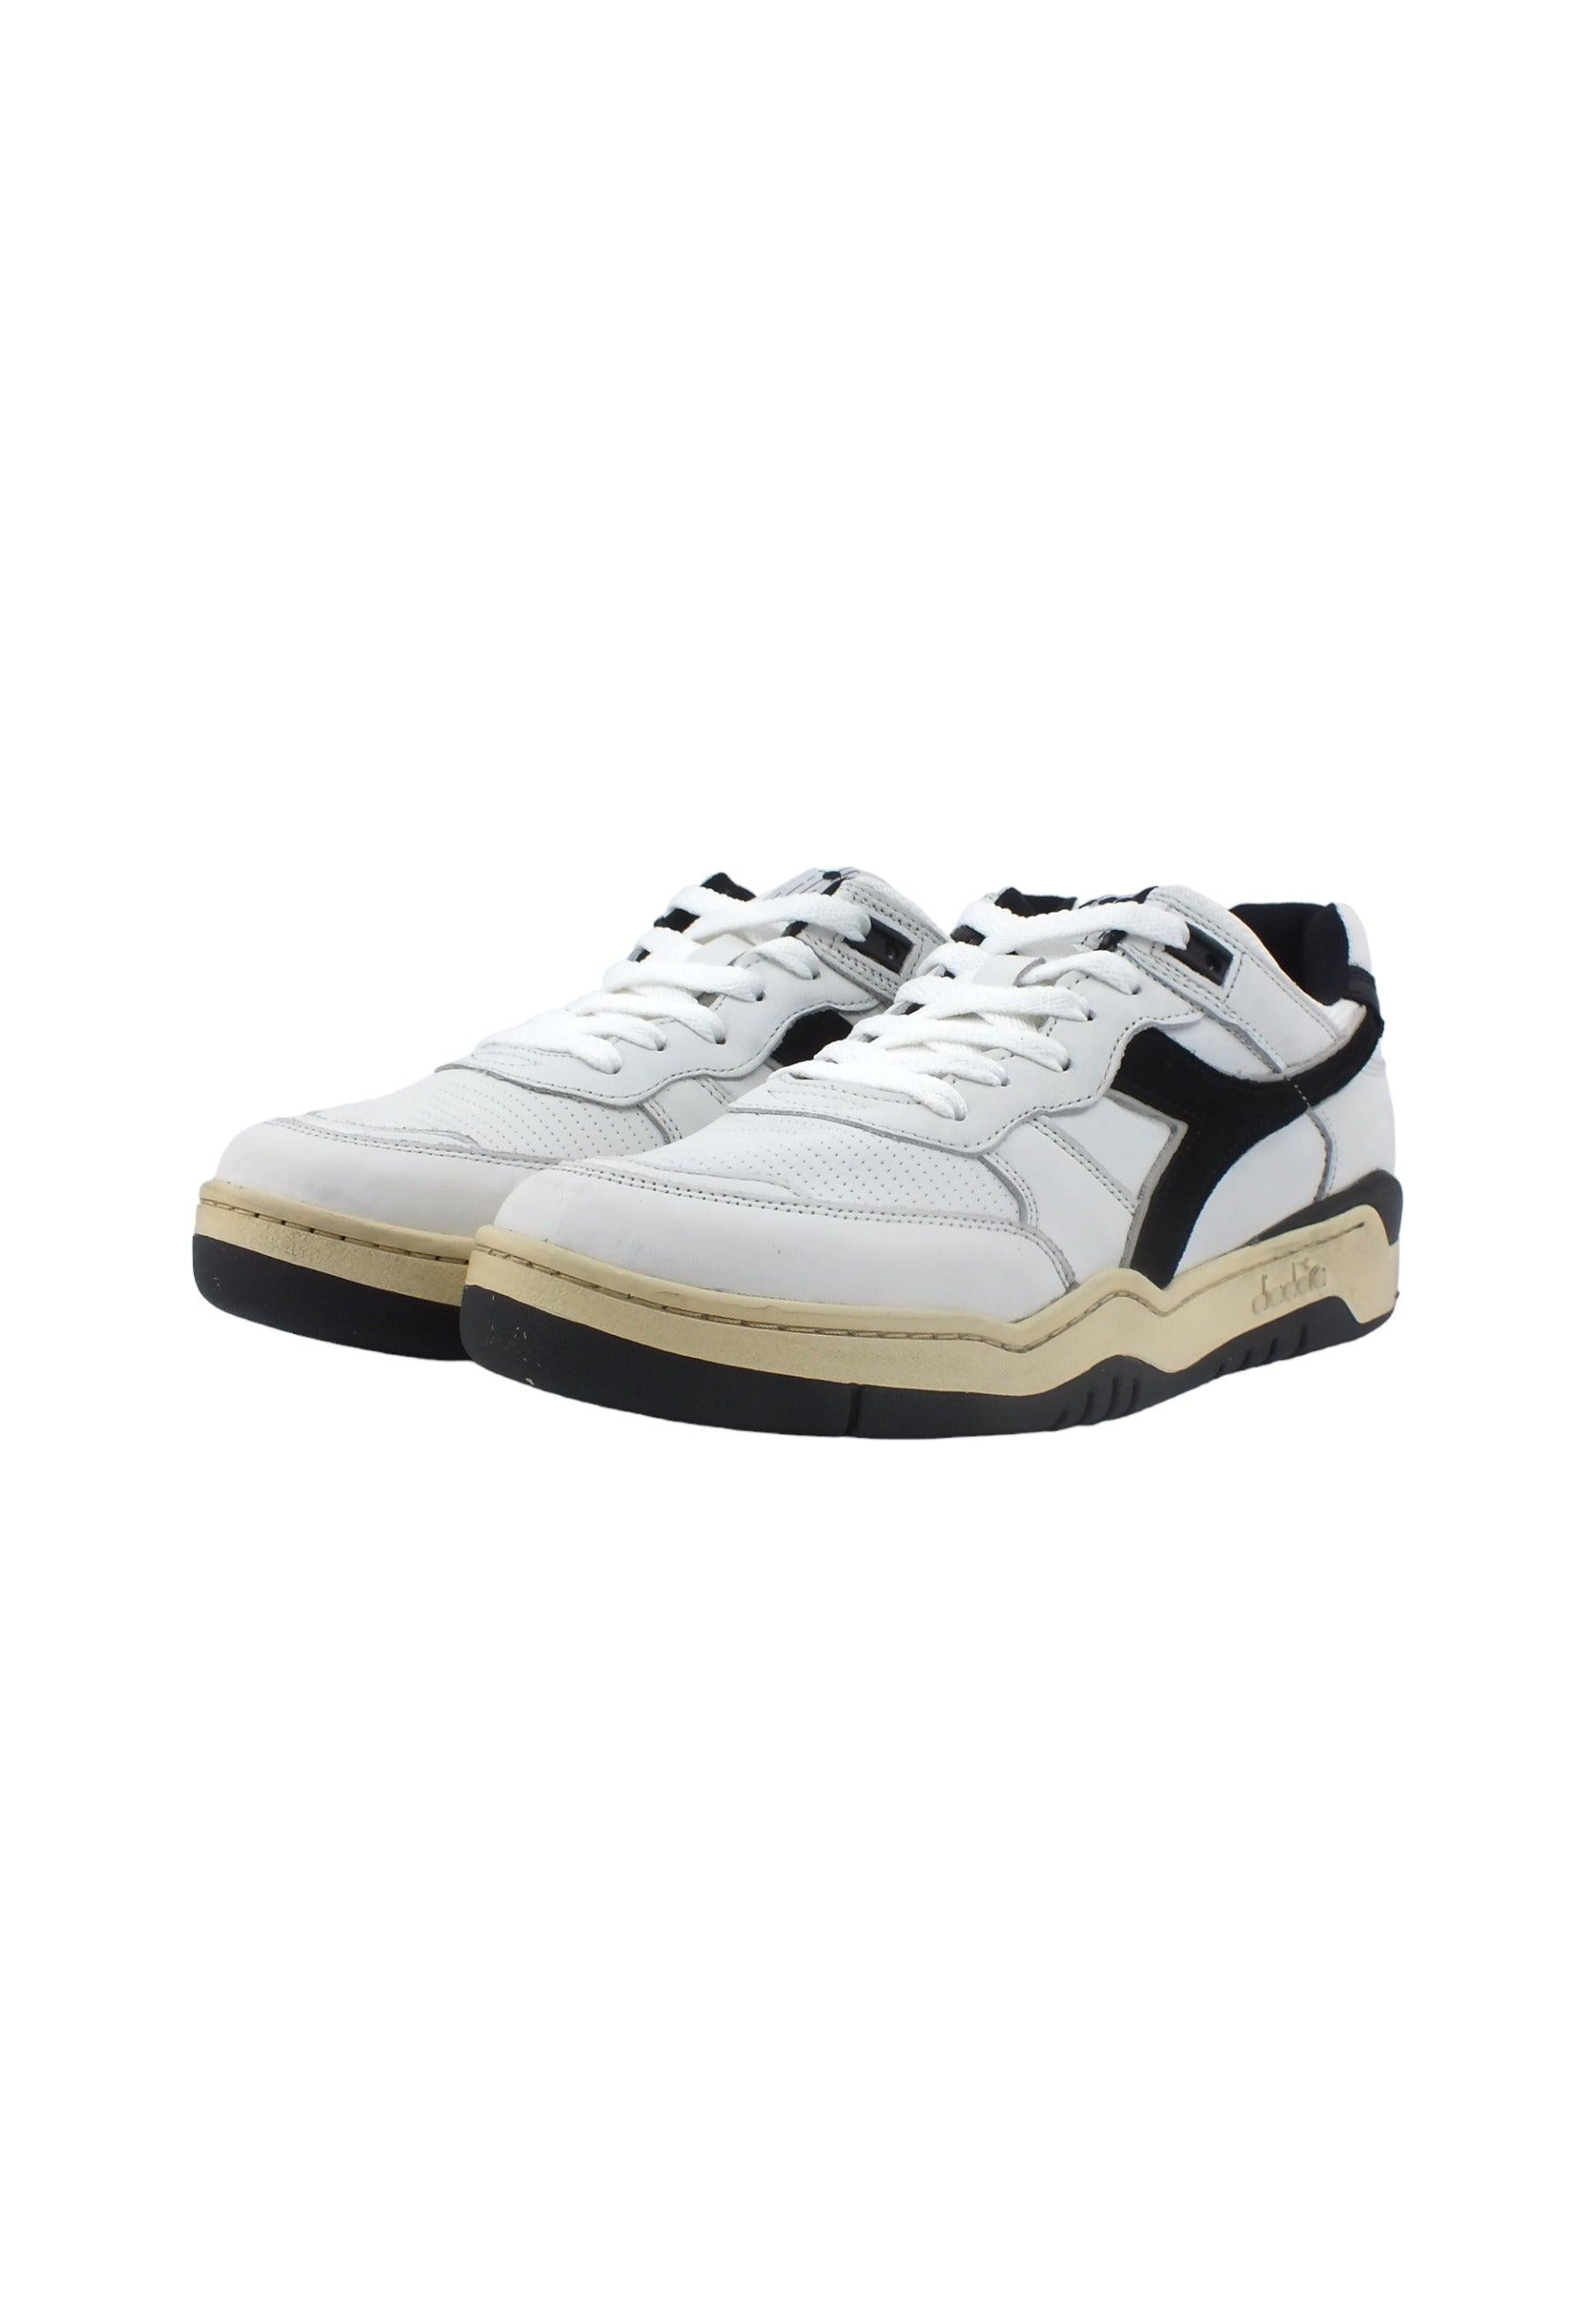 DIADORA B.560 Used Sneaker Uomo White Black 201.18011701C0351 - Sandrini Calzature e Abbigliamento